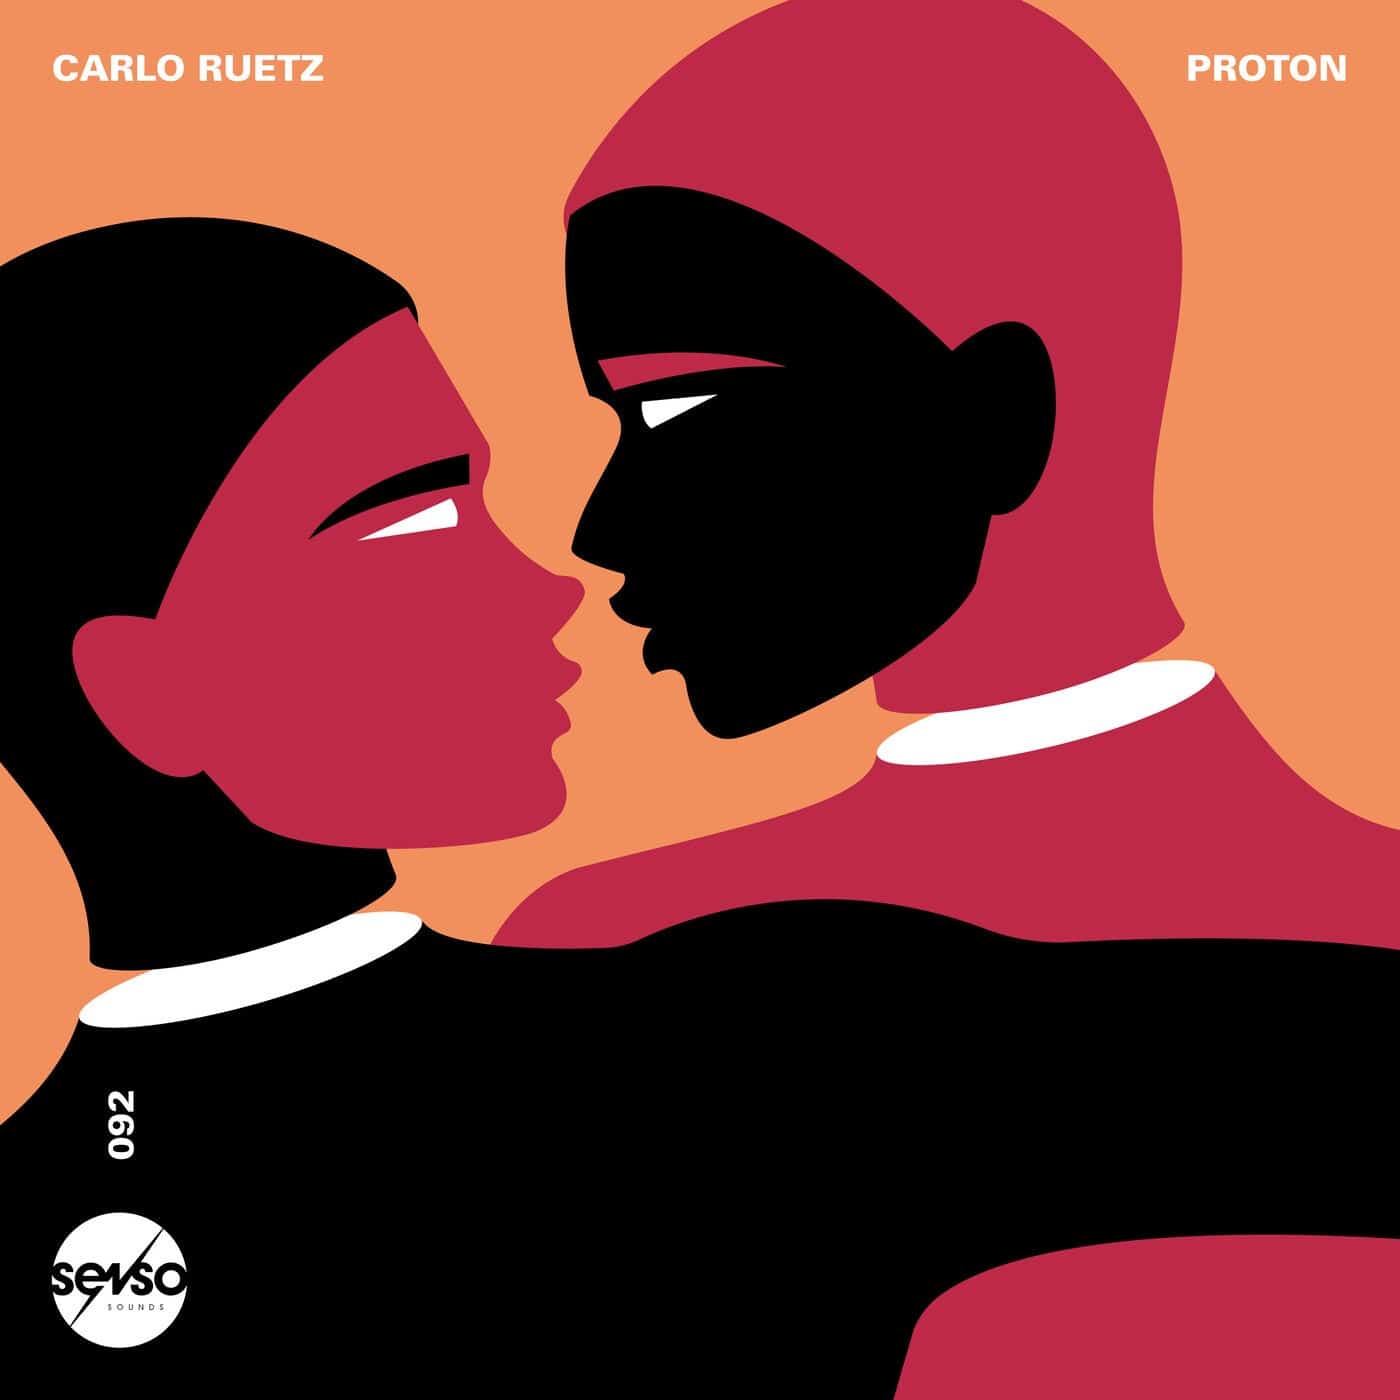 Download Carlo Ruetz - Proton on Electrobuzz